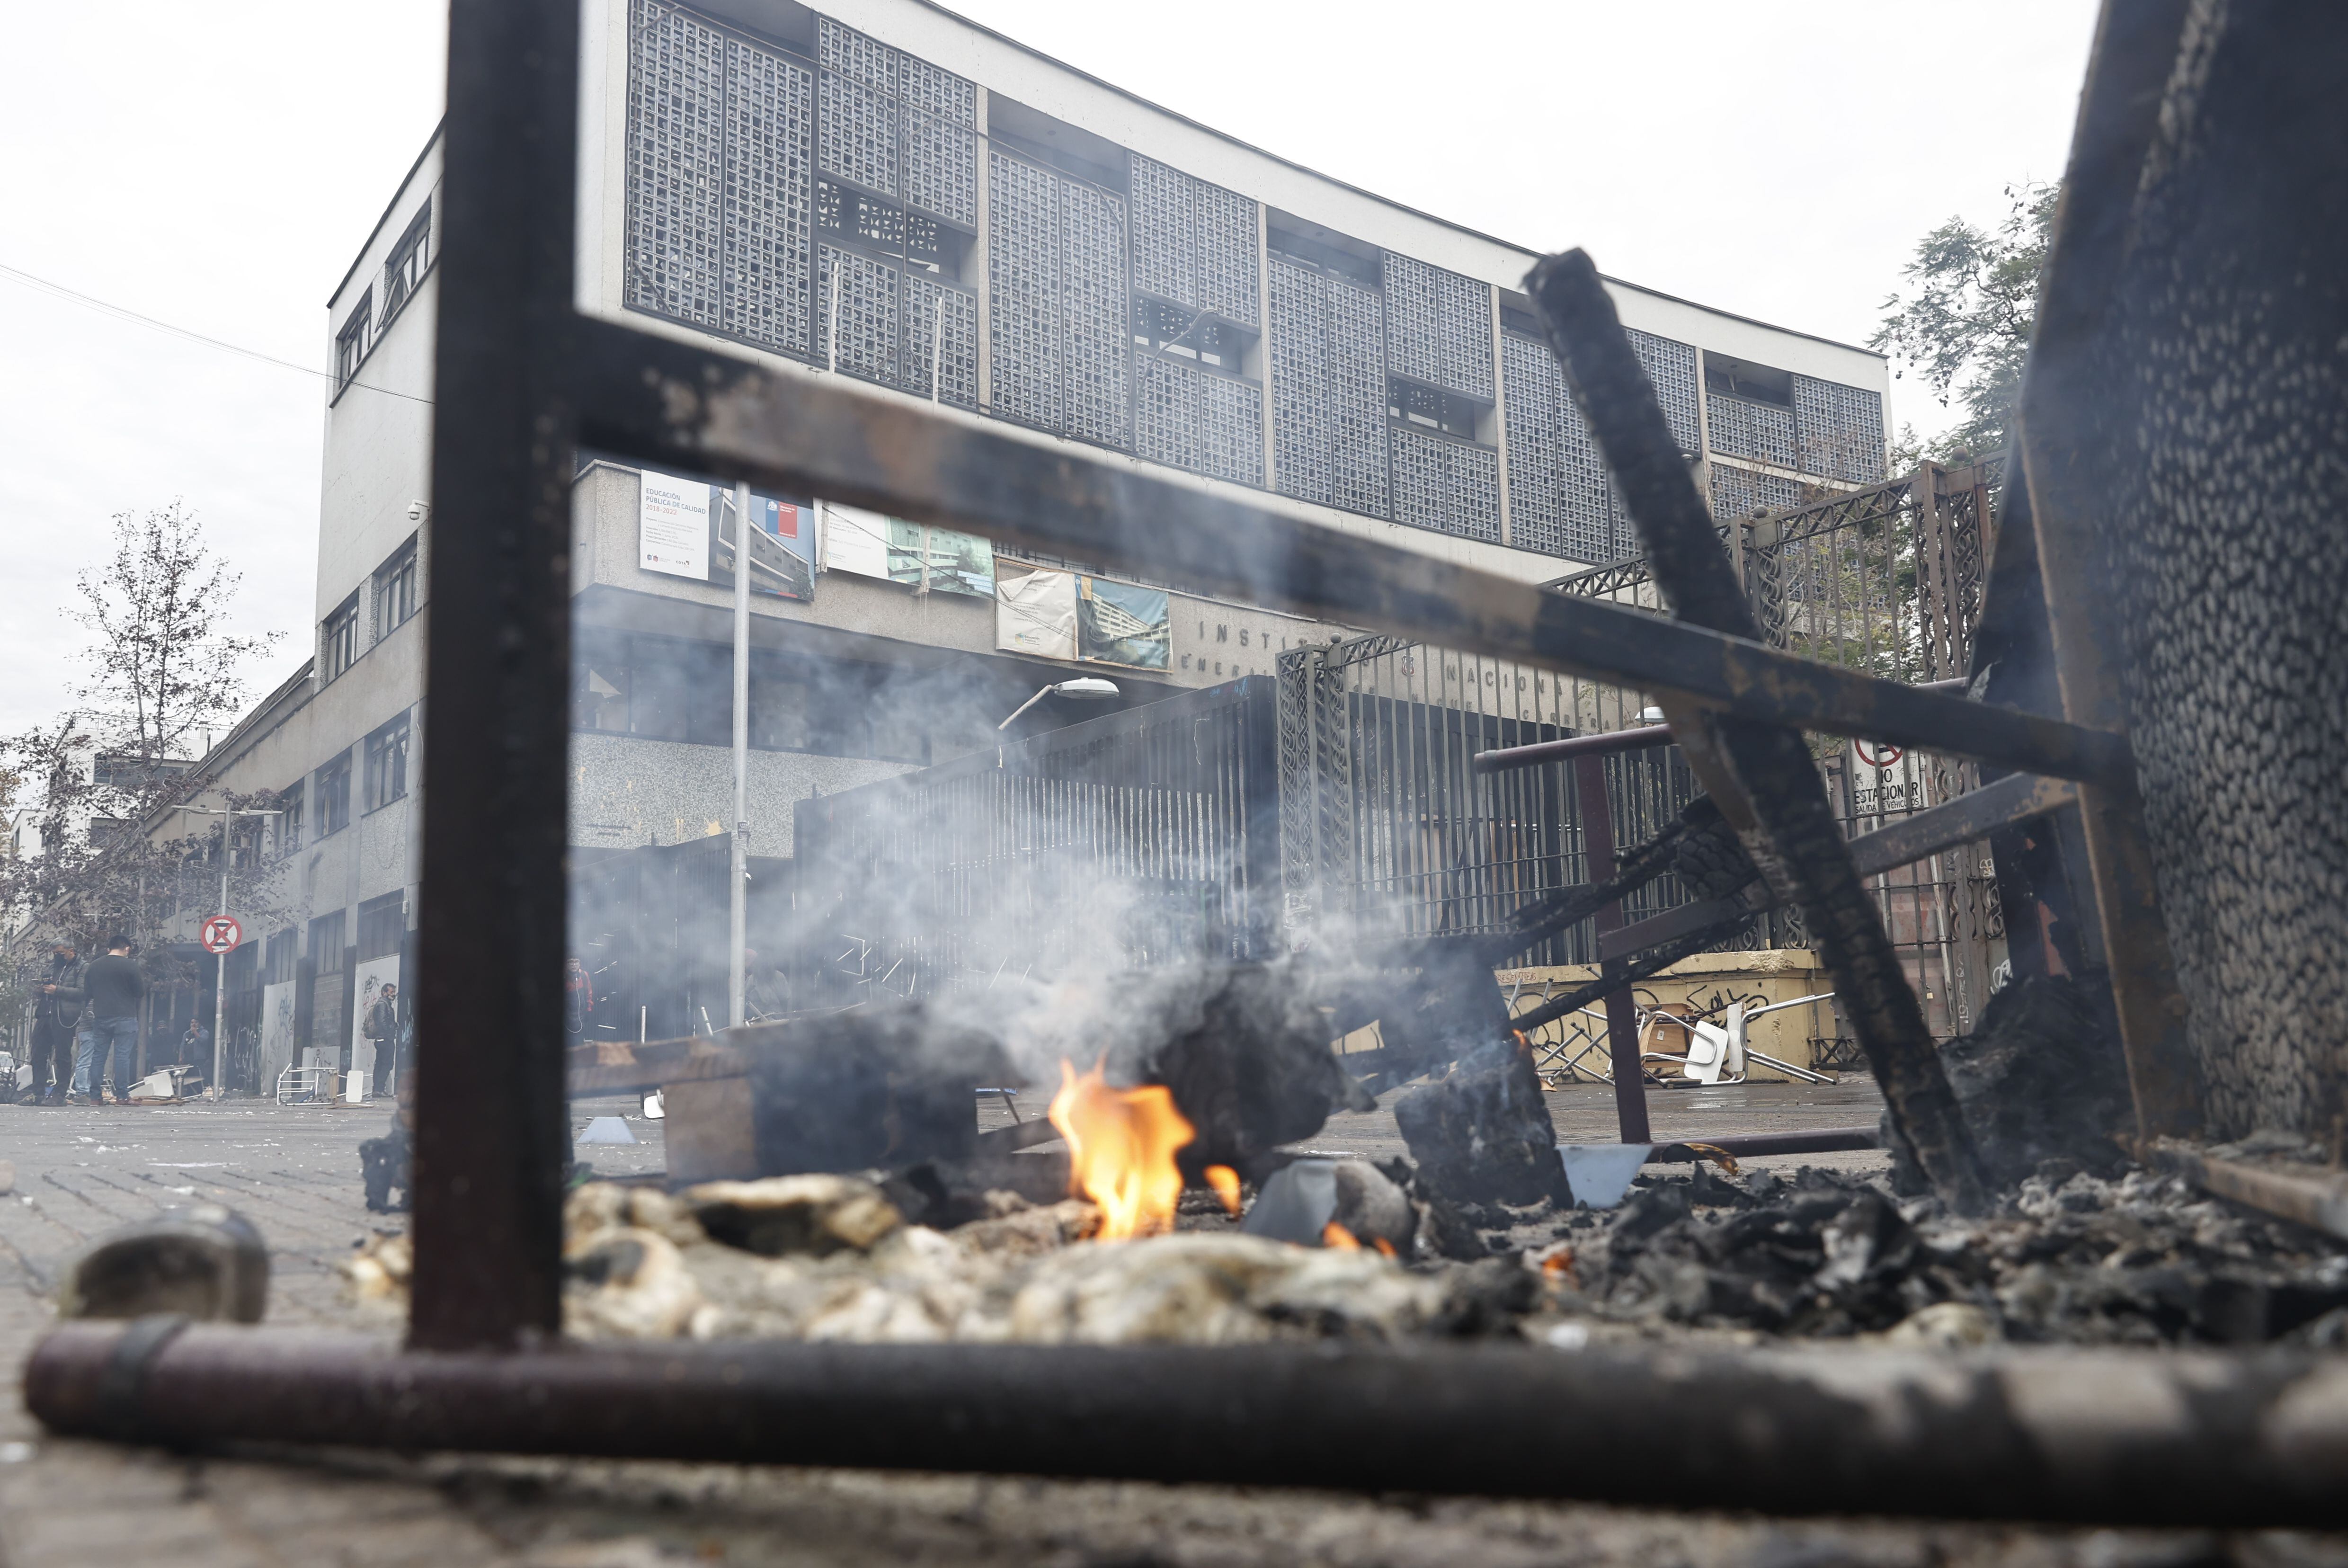 Vista exterior del Instituto Nacional, uno de los principales centros educativos del país, donde hoy tuvo lugar un incendio que afectó a sus instalaciones al mismo tiempo que un grupo de estudiantes protestaba en los alrededores para exigir mejoras educativas, en Santiago (Chile). EFE/ Alberto Valdes 